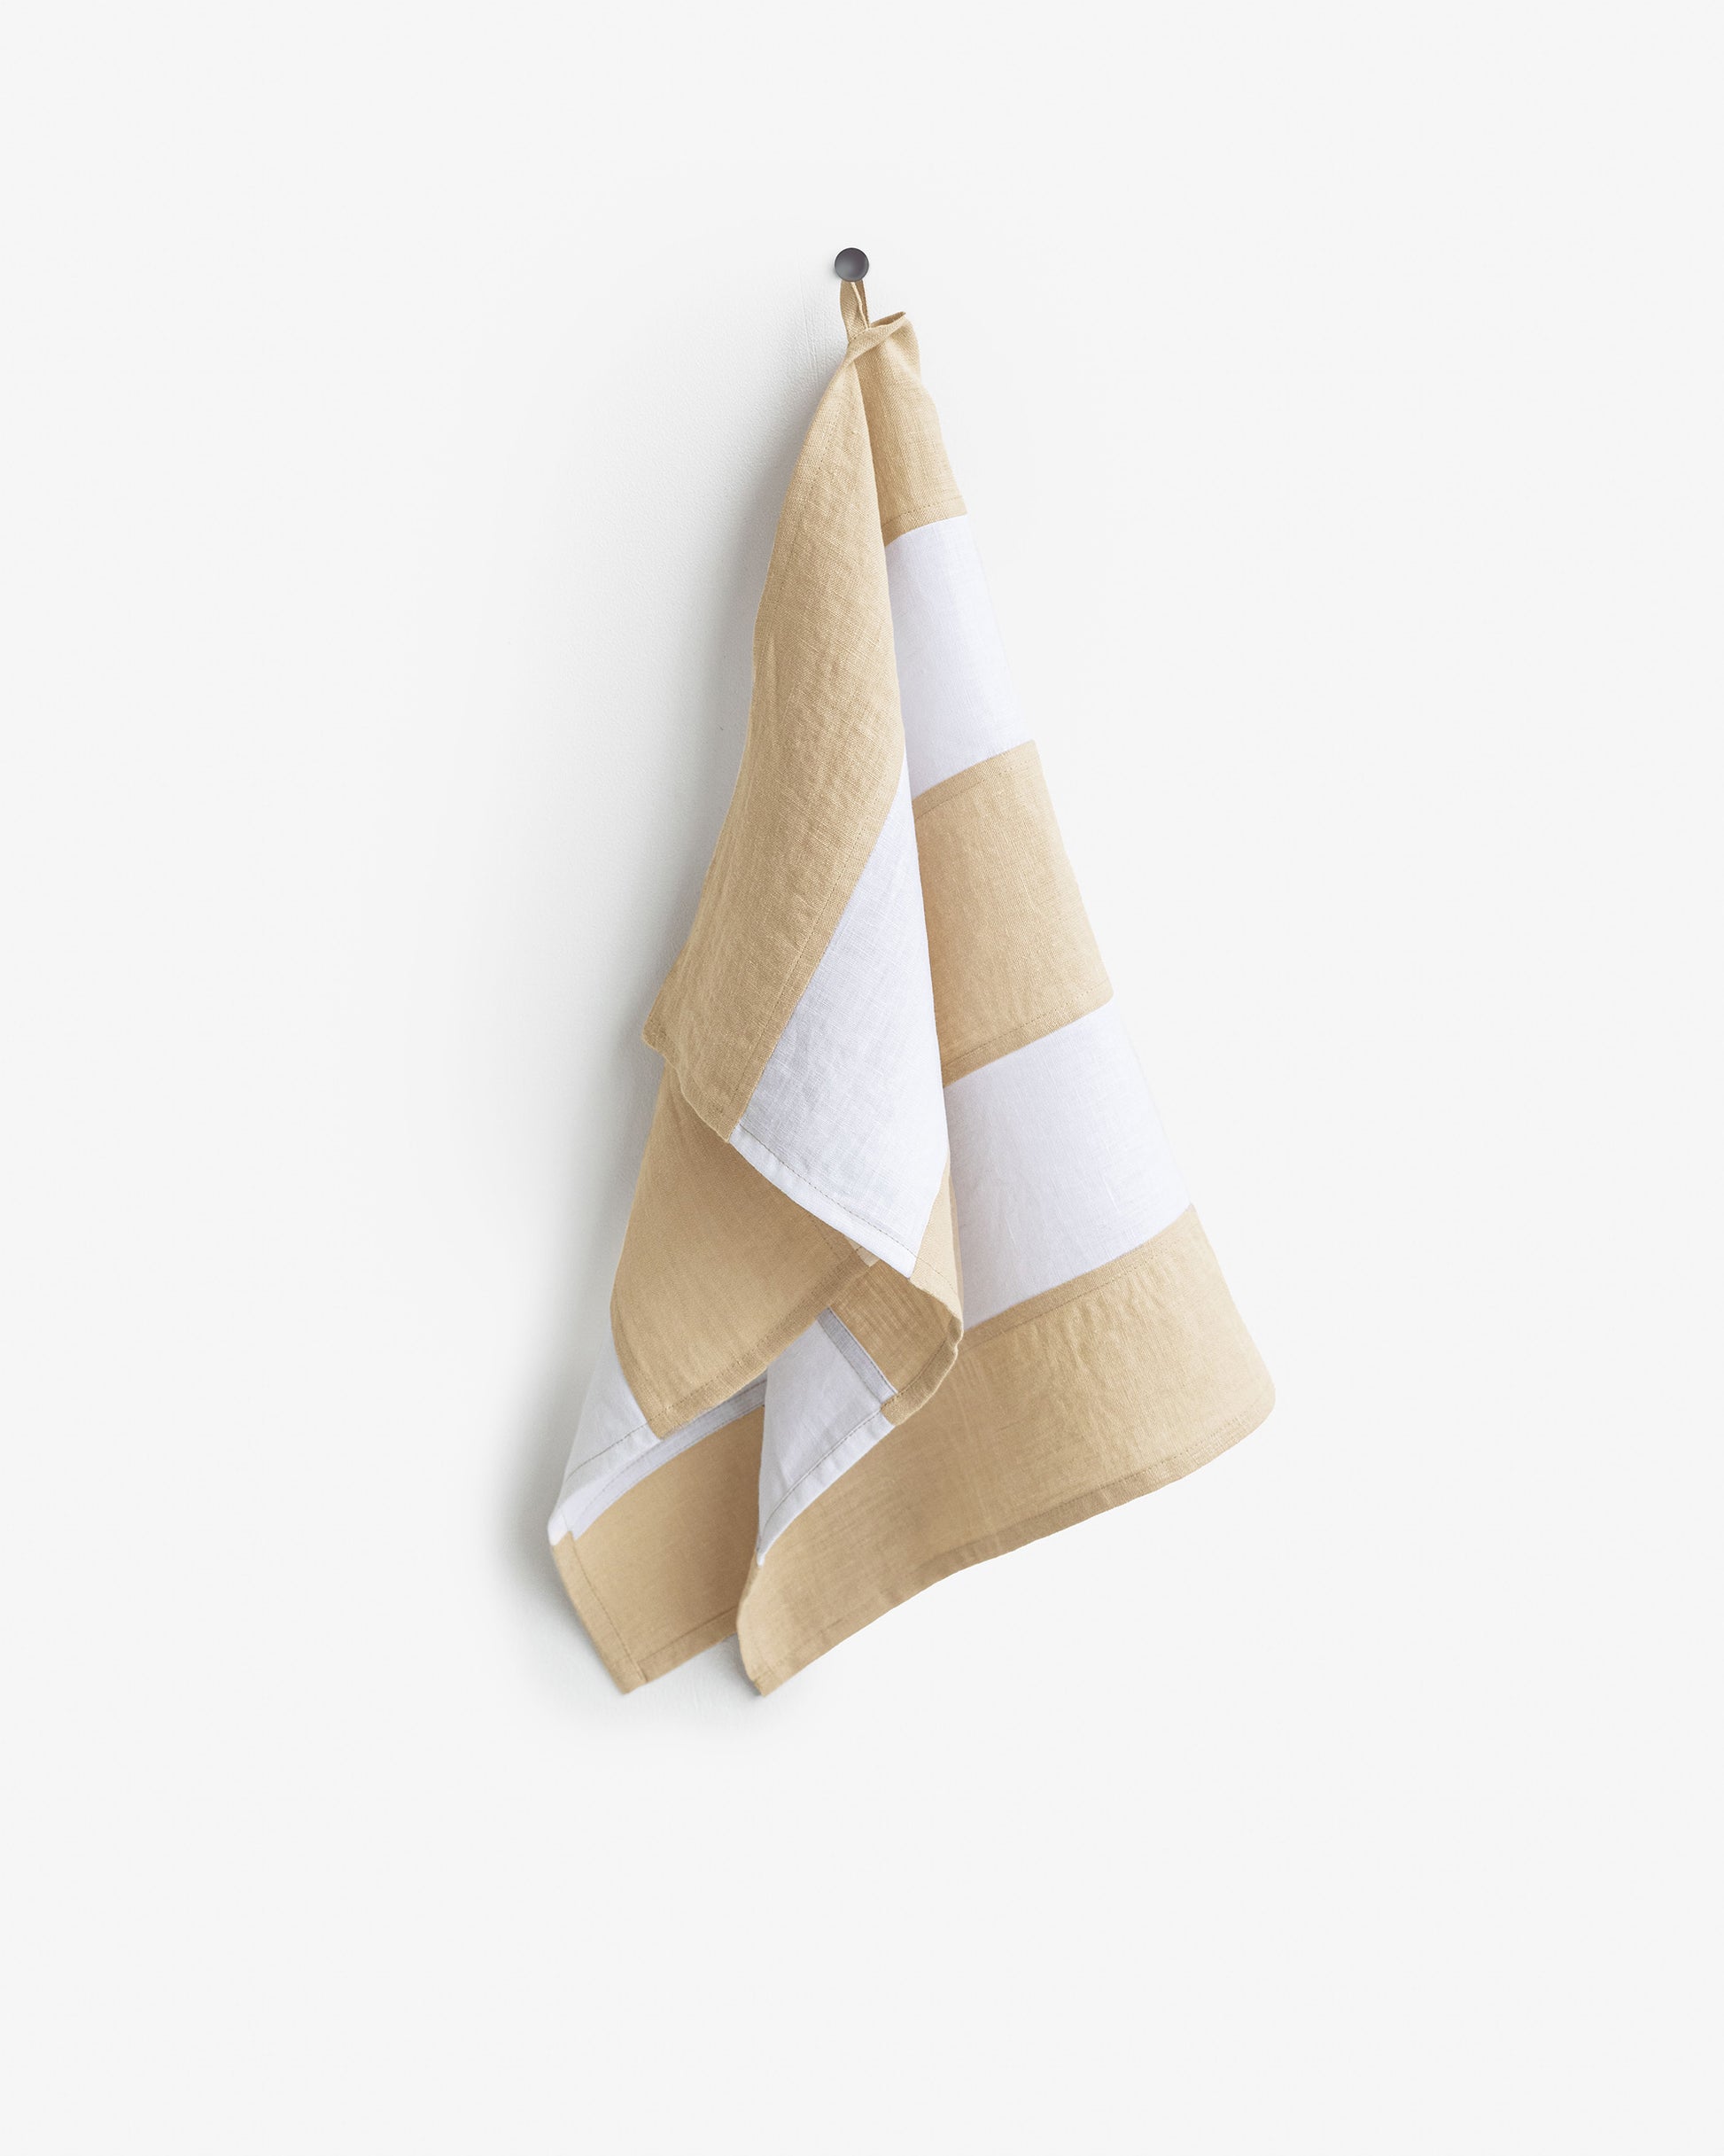 Zero-waste striped linen tea towel in Sandy beige - MagicLinen